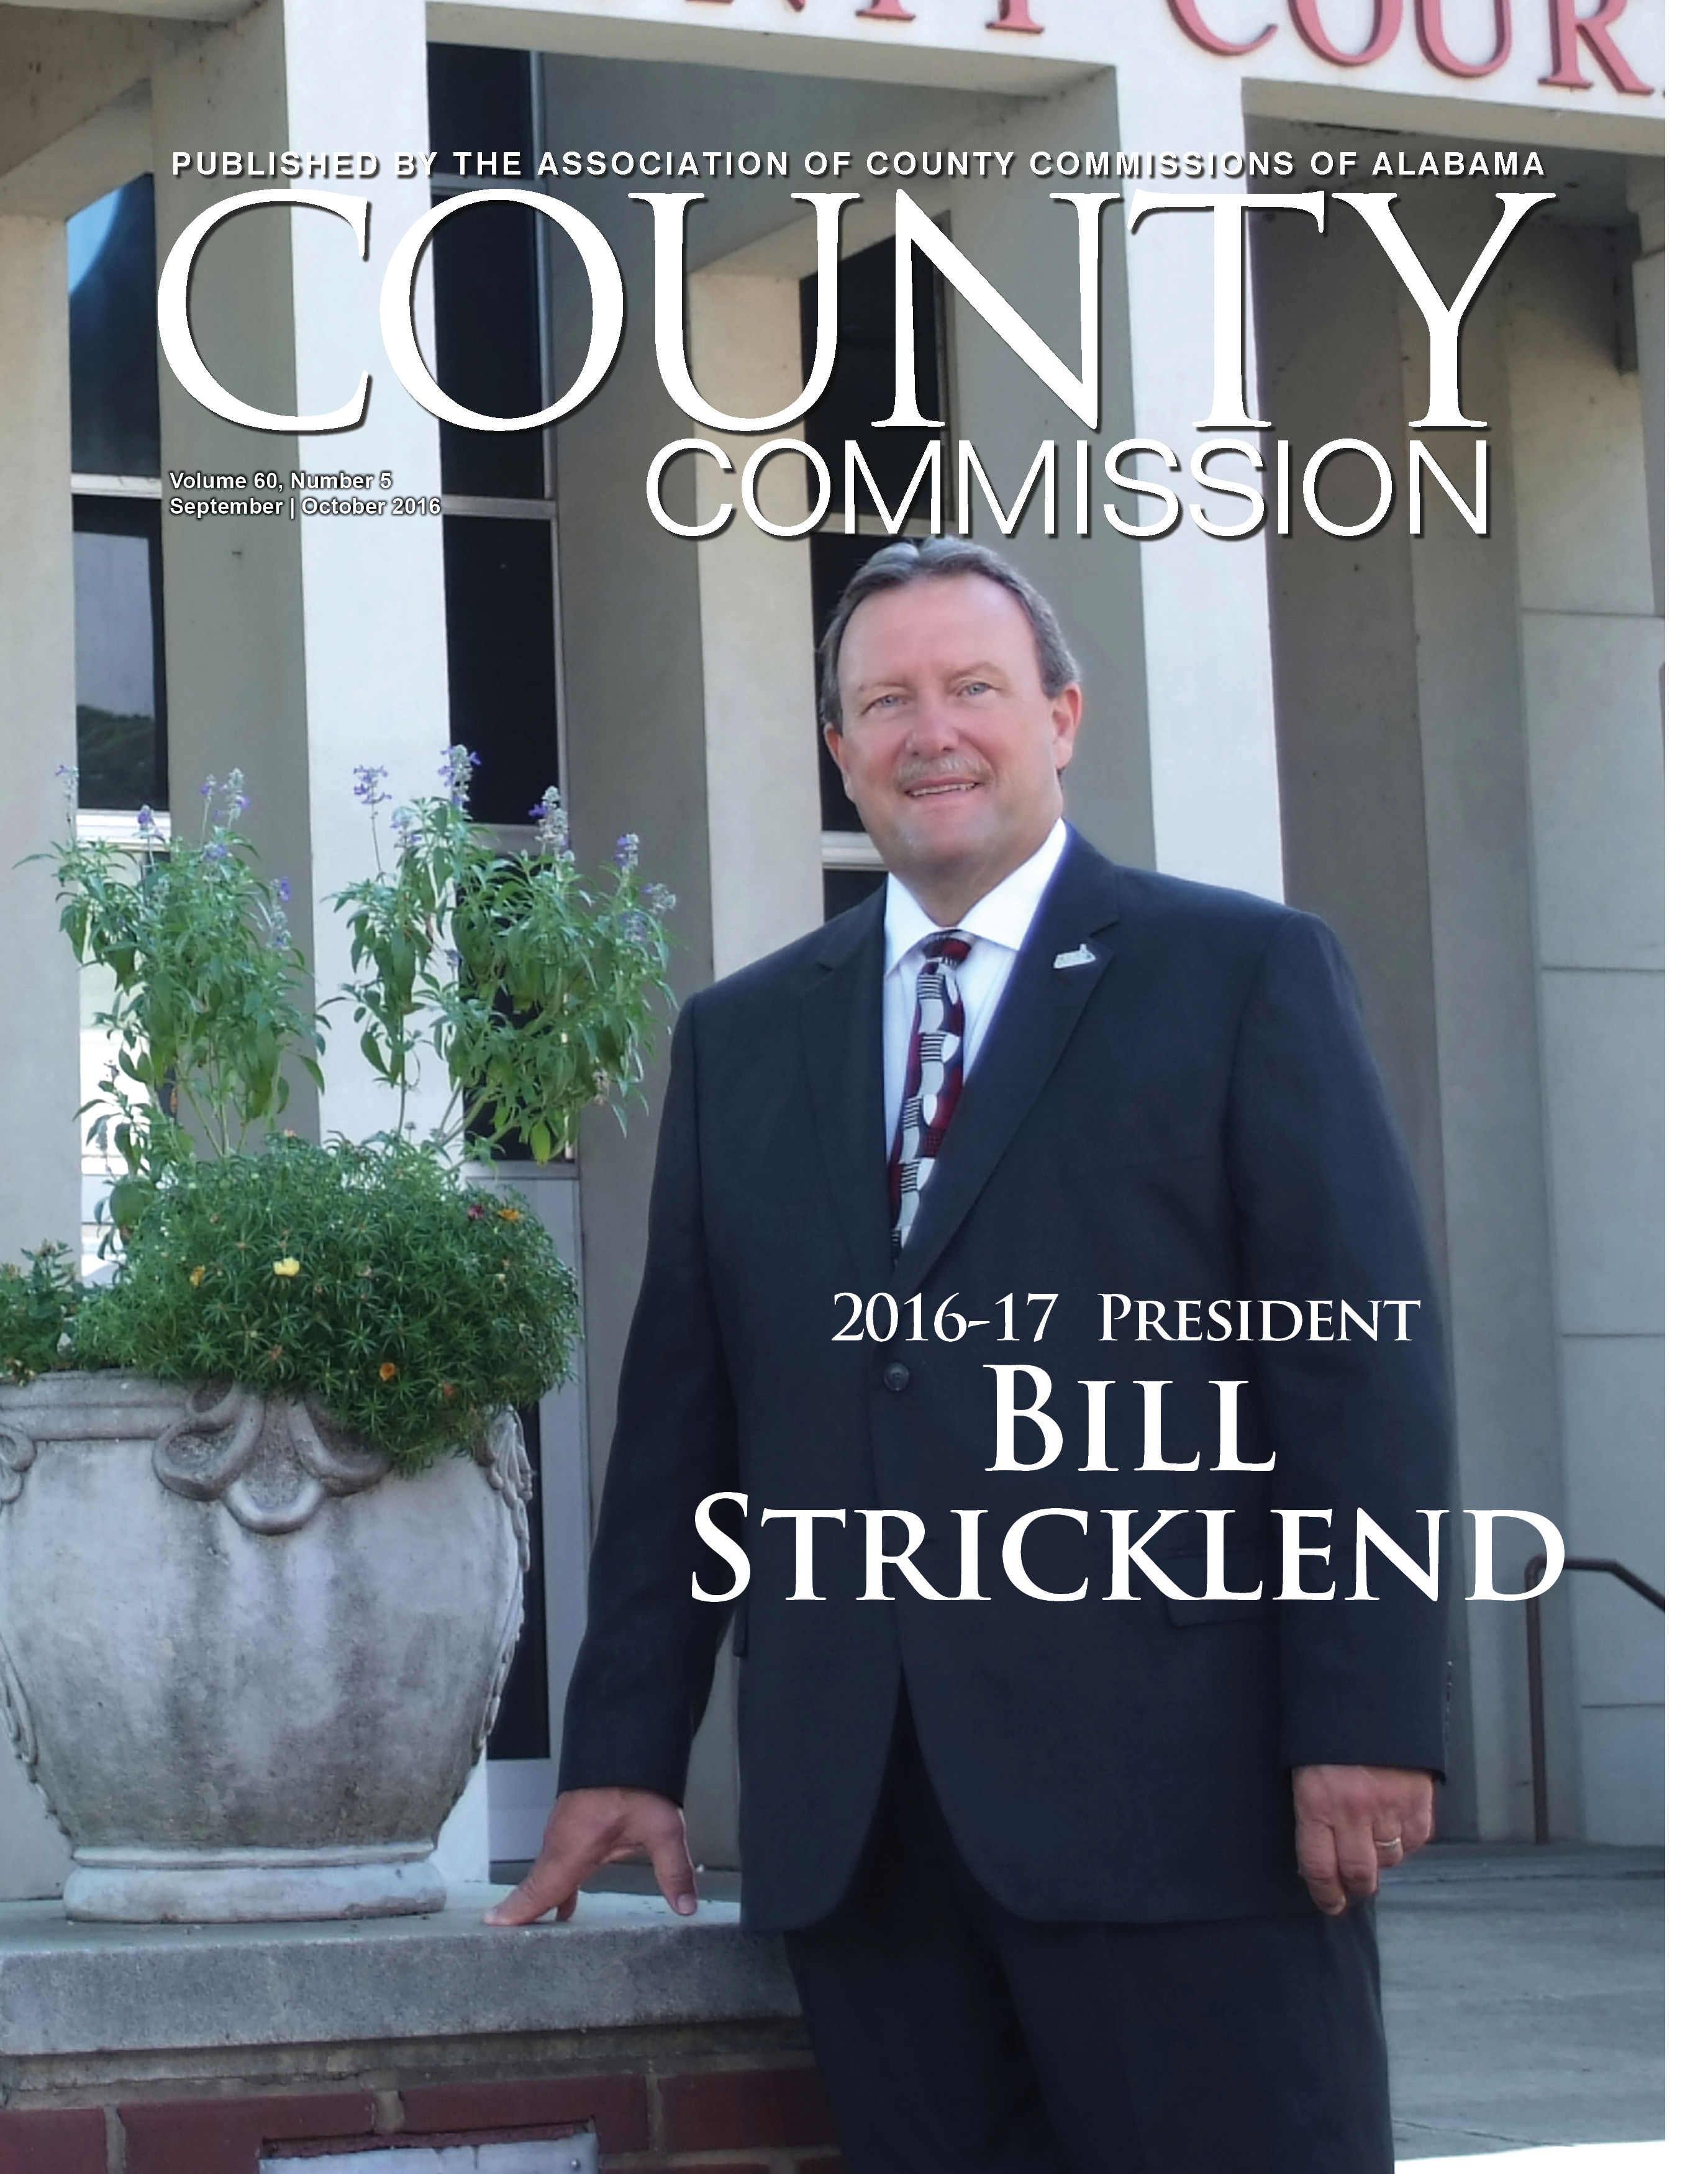 2016-17 President Bill Stricklend